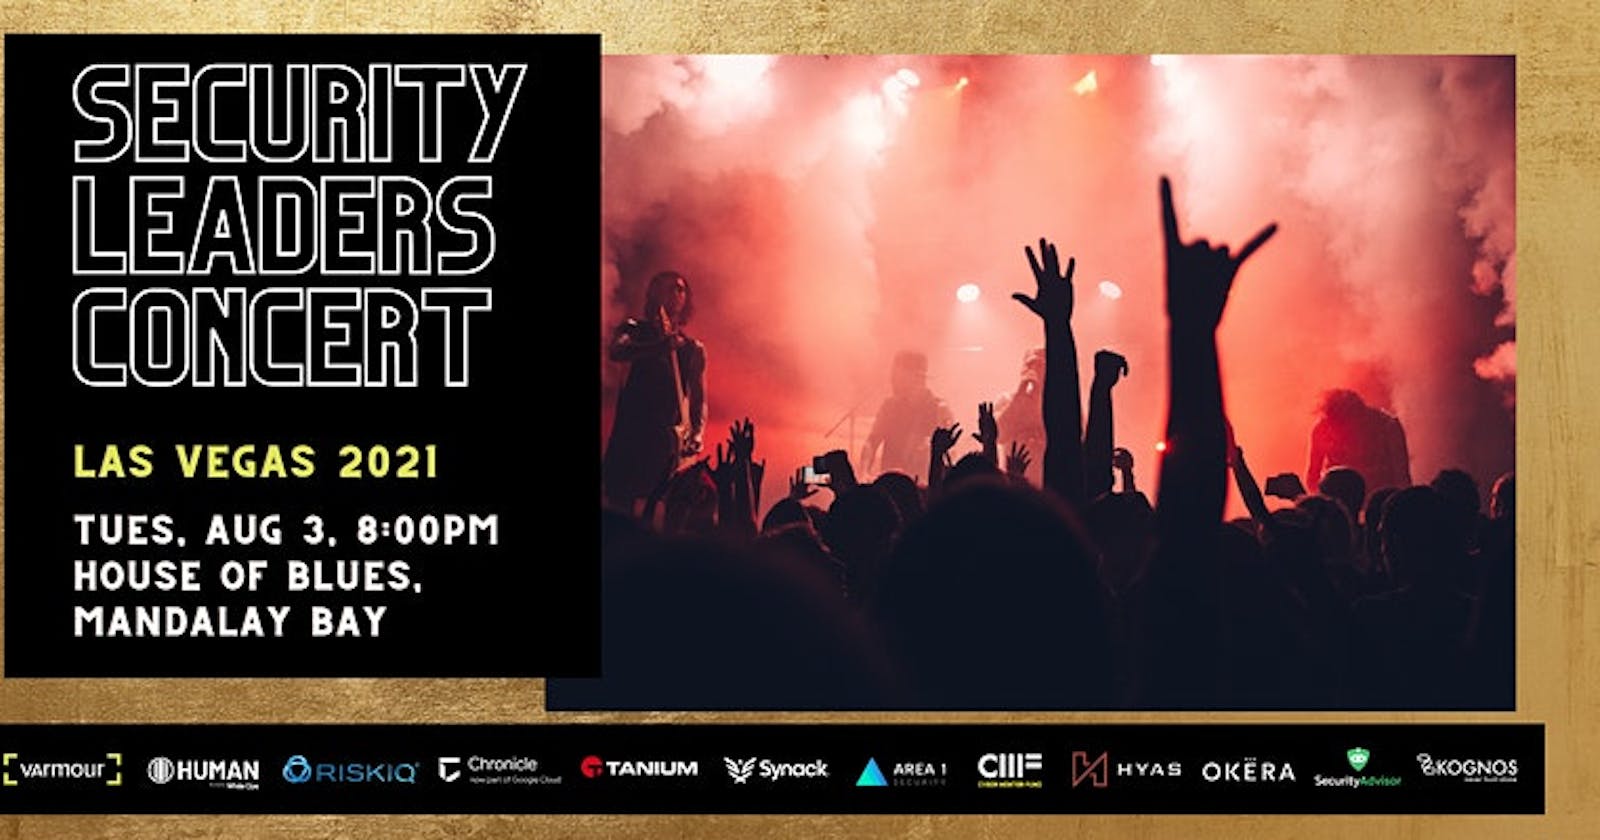 Security Leaders Concert - Las Vegas 2021 August 3rd 8:00 - 11:00